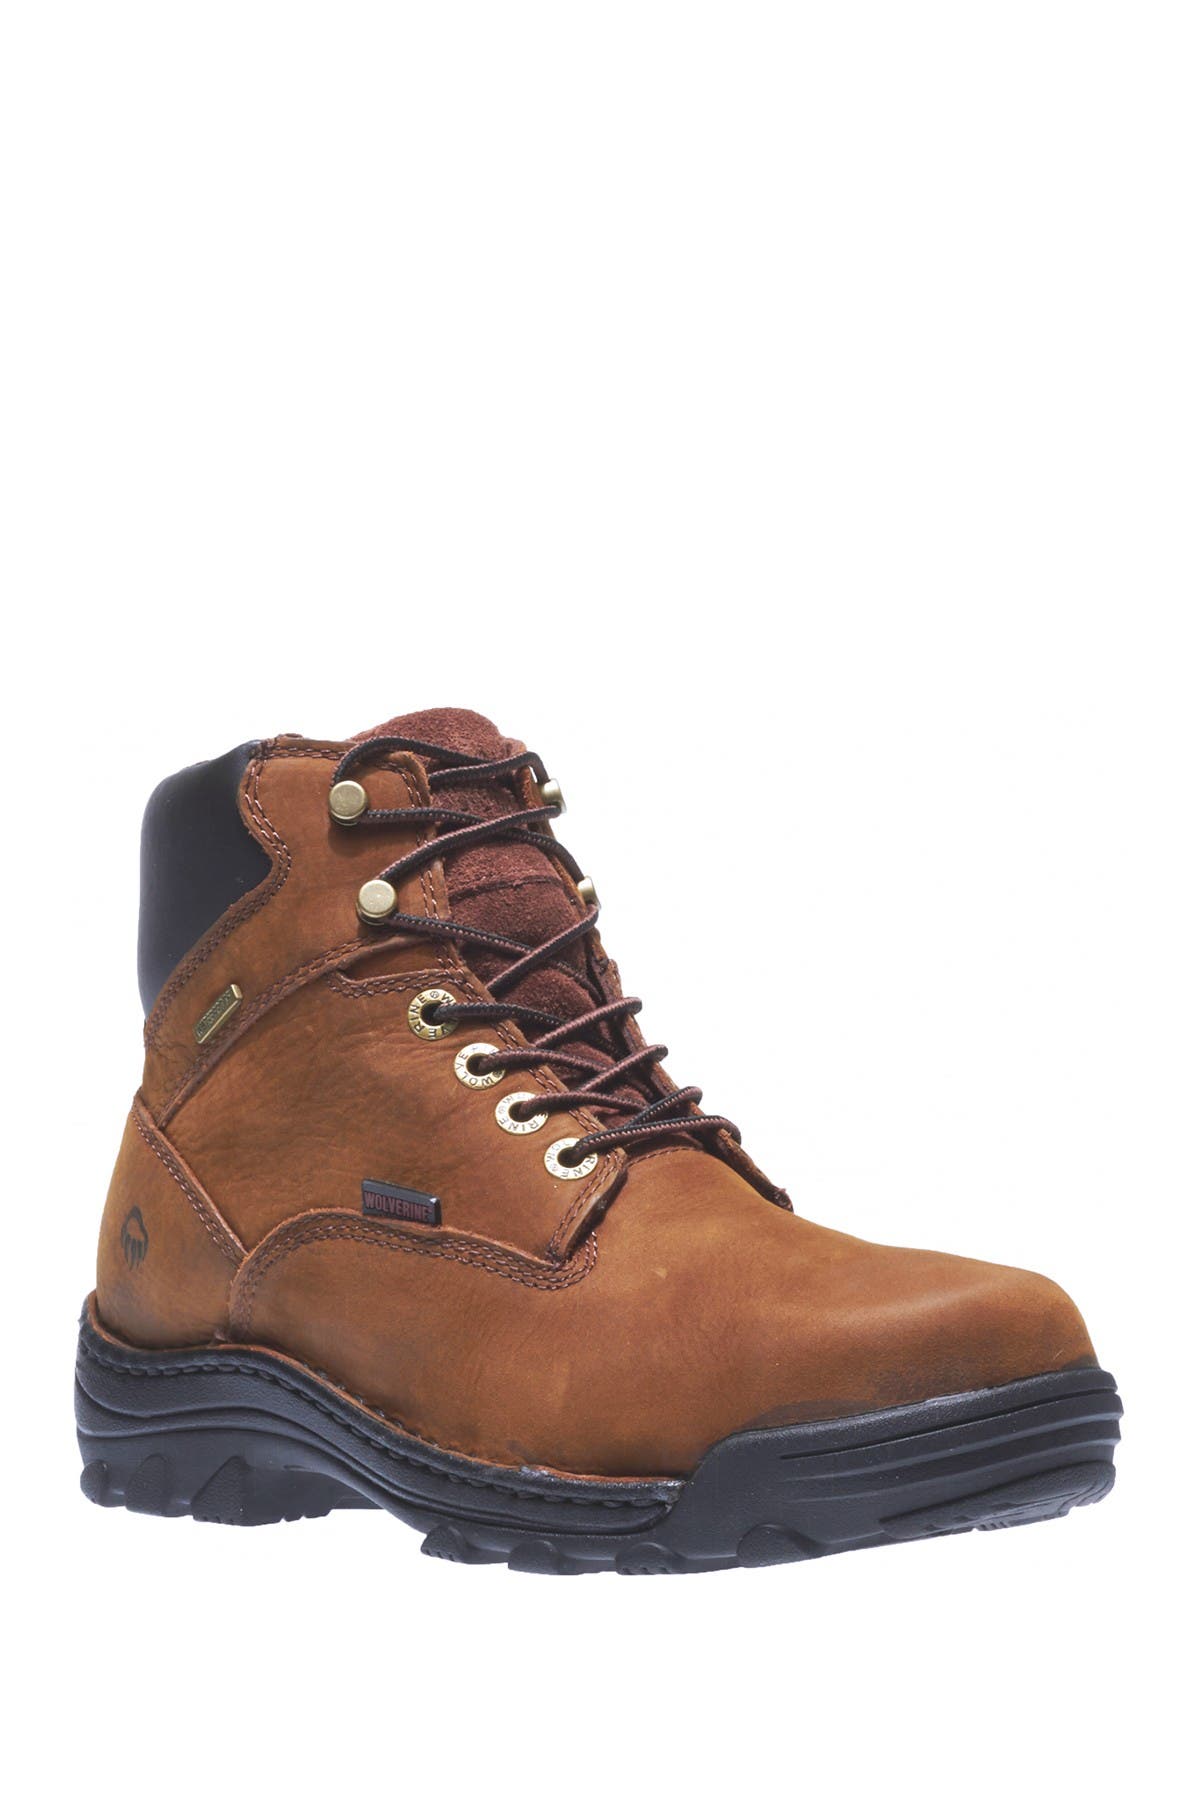 steel toe wide width work boots